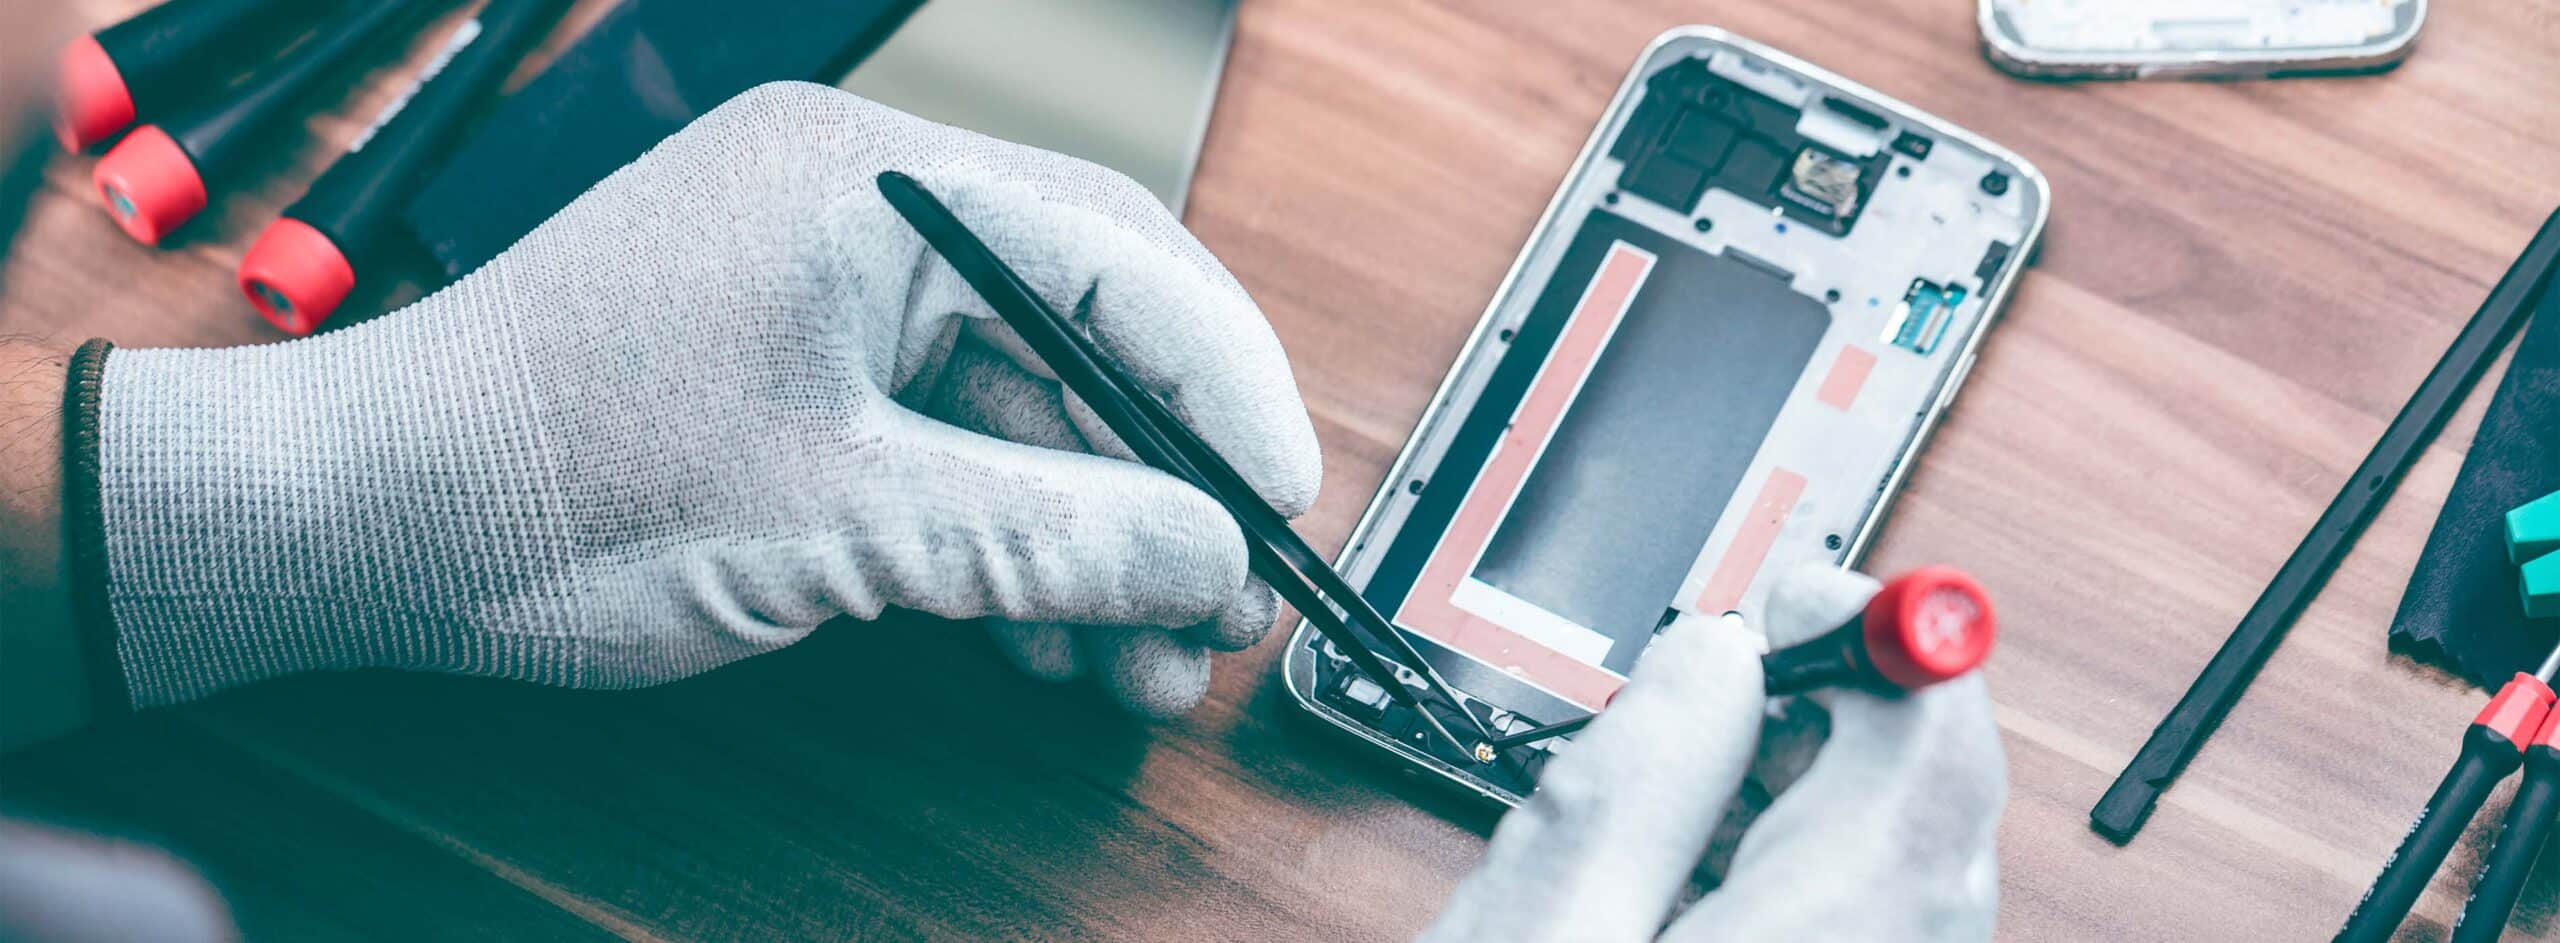 Manutenção de celular: os 3 problemas mais comuns e como resolvê-los